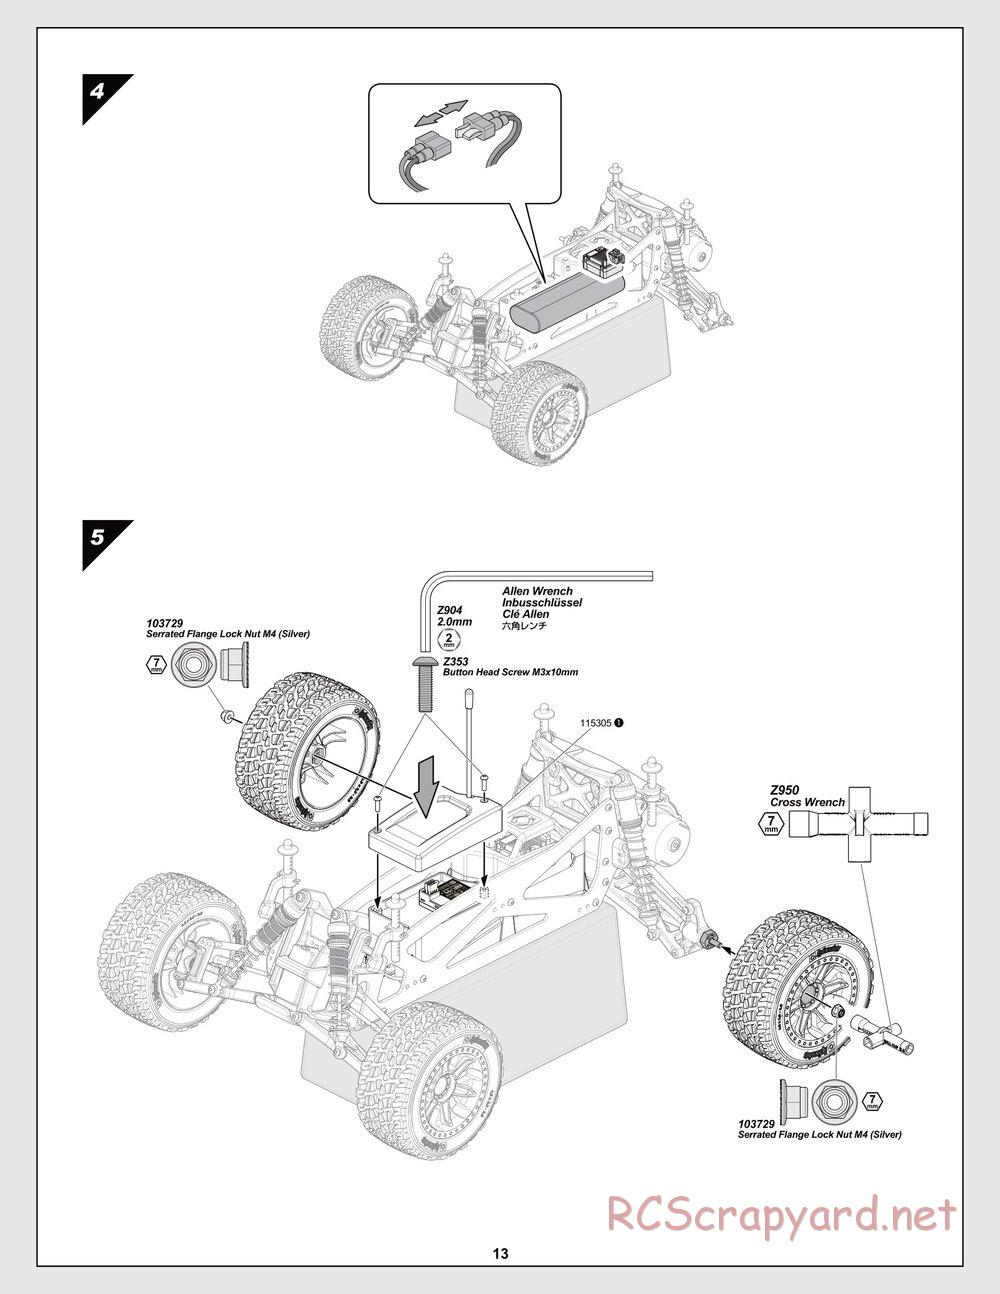 HPI - Jumpshot SC / ST V2 - Manual - Page 13